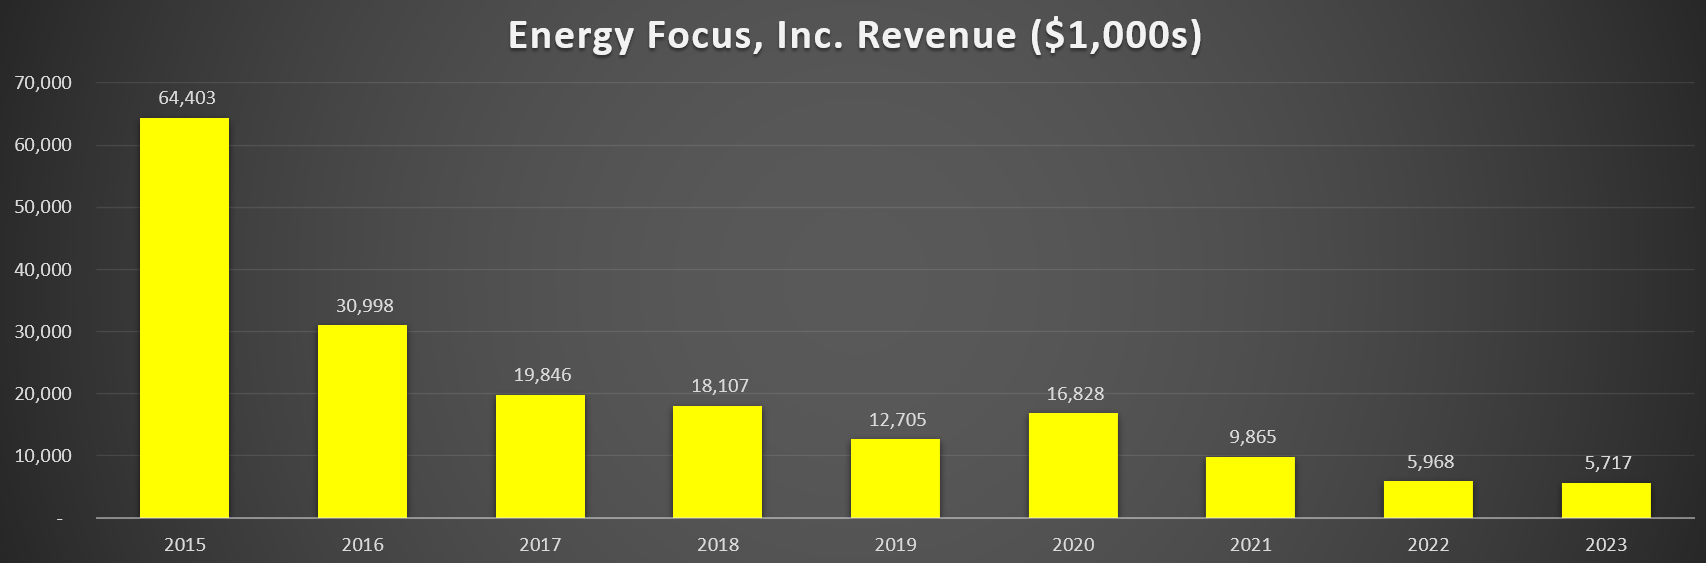 energy focus sales 2023.png